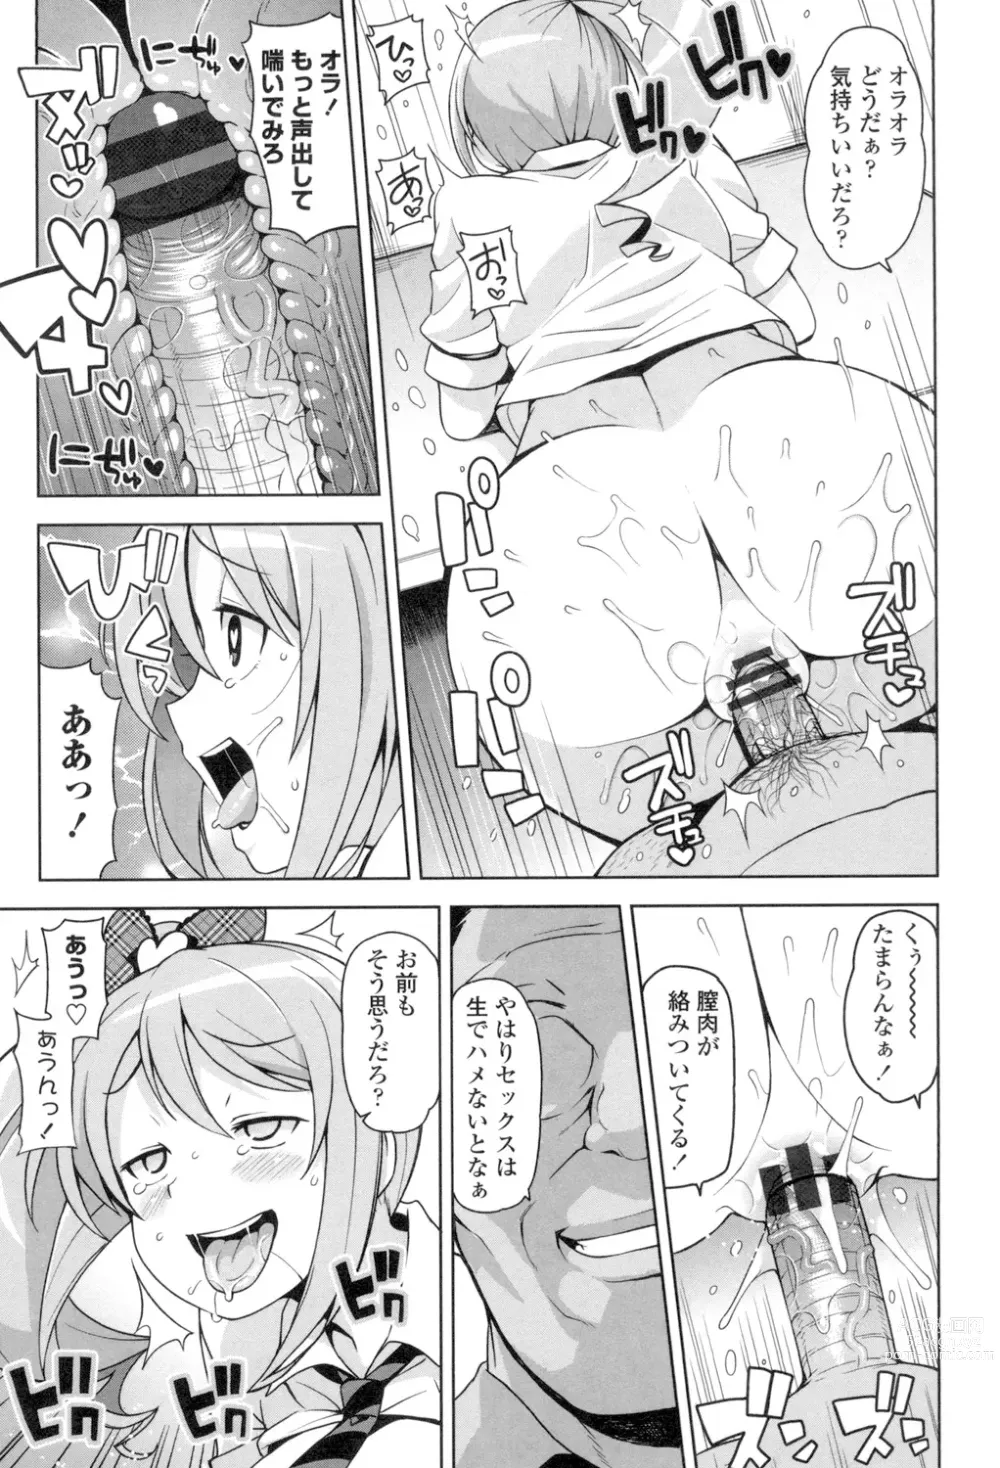 Page 204 of manga Hametomo Collection